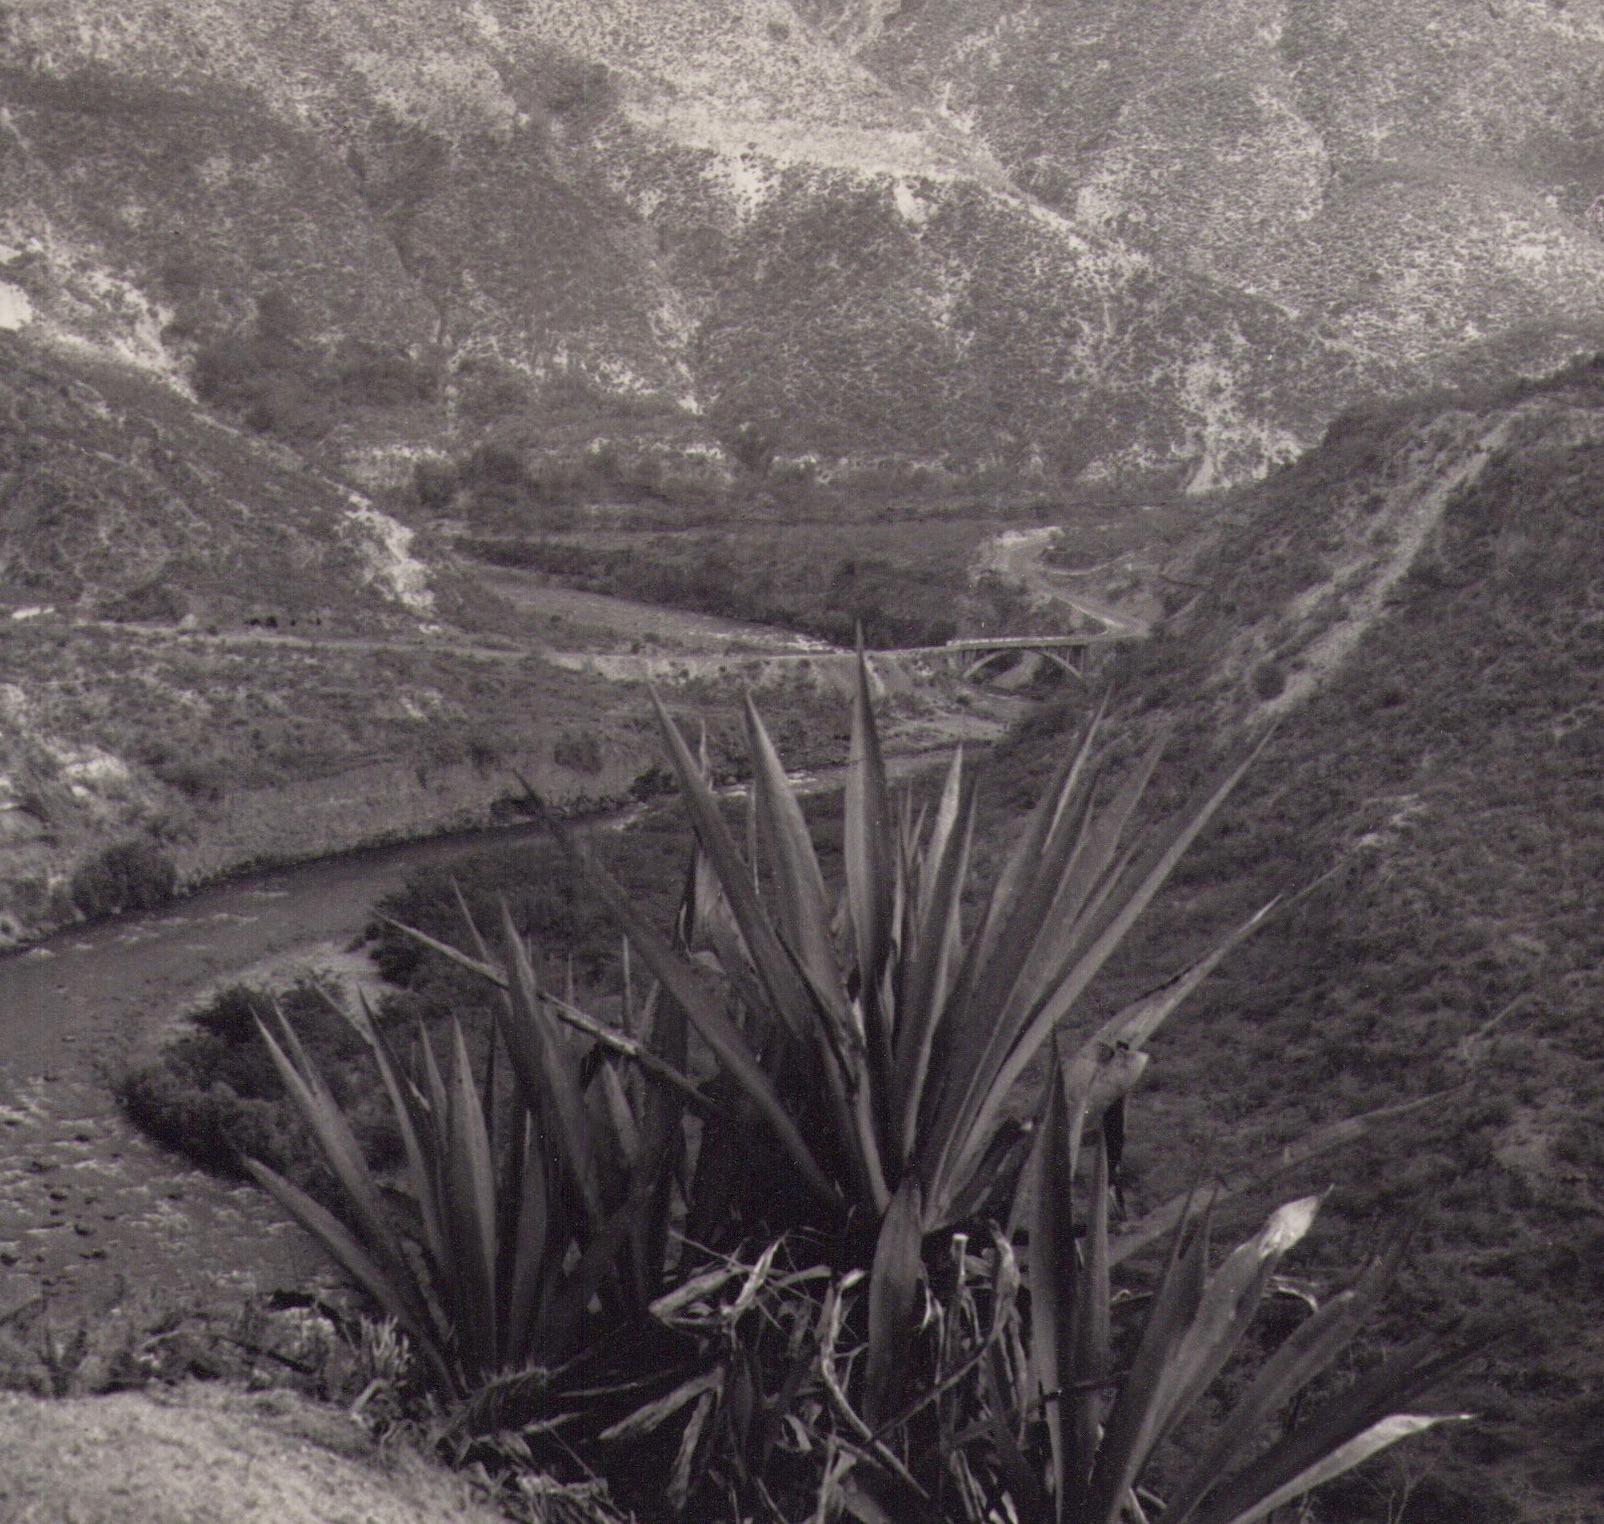 Ecuador, Landscape, Black and White Photography, 1960s, 21, 2 X 17, 2 cm - Gray Portrait Photograph by Hanna Seidel